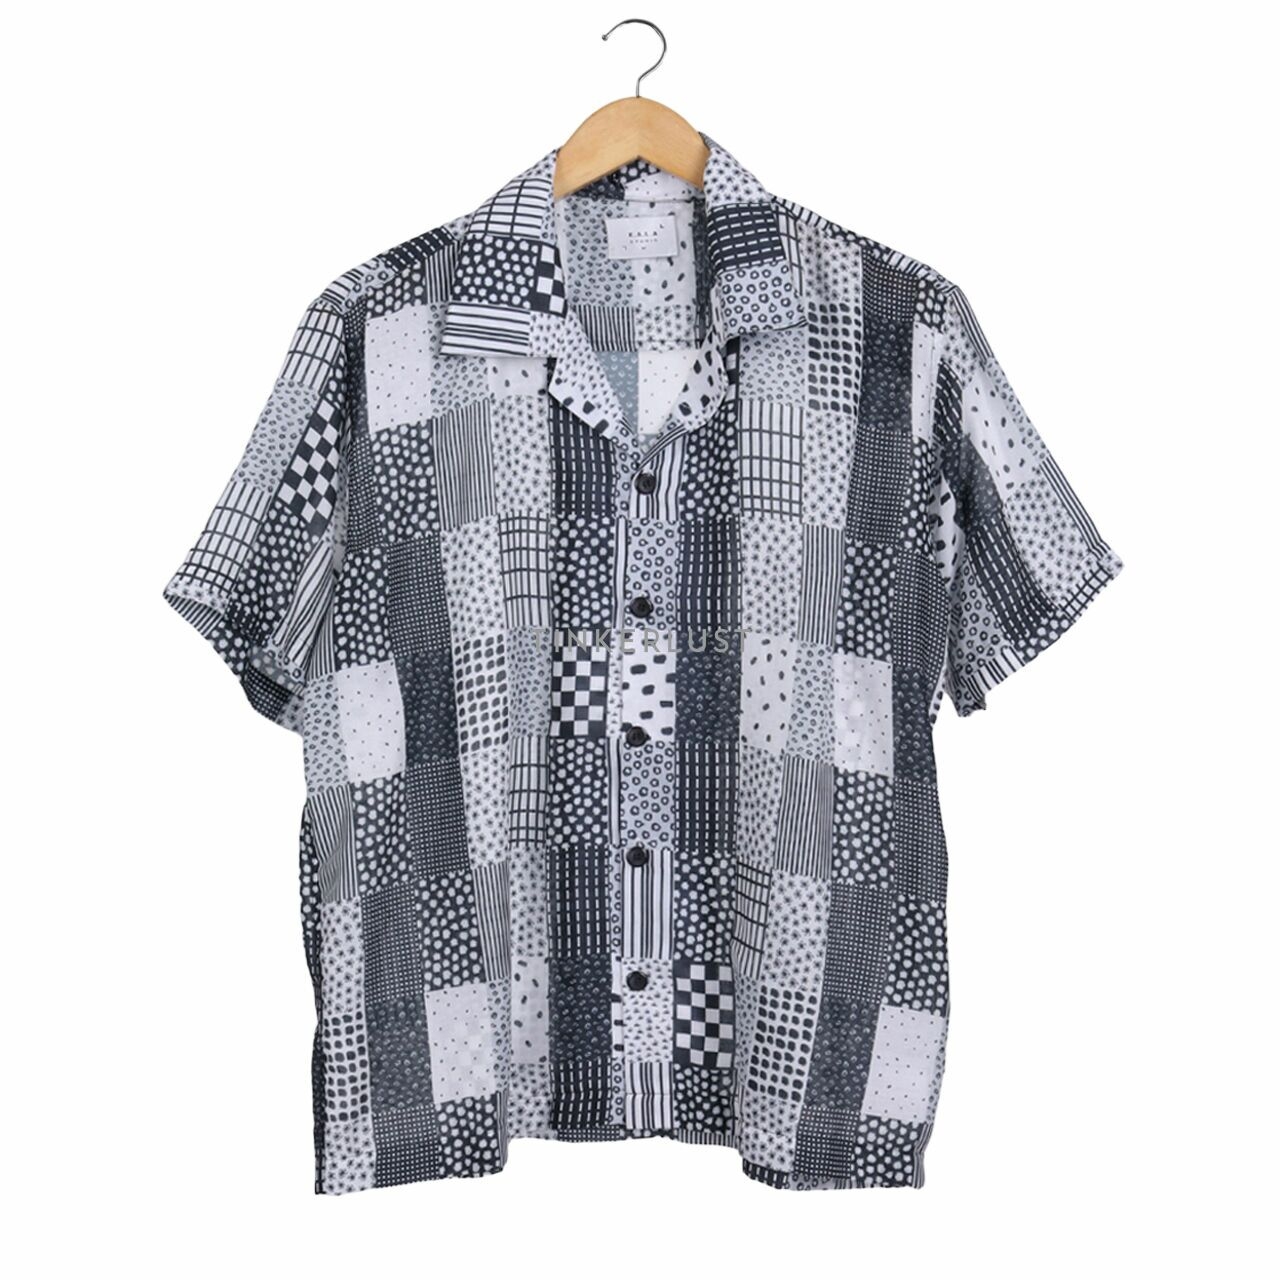 K.A.L.A studio Black & Grey Pattern Shirt